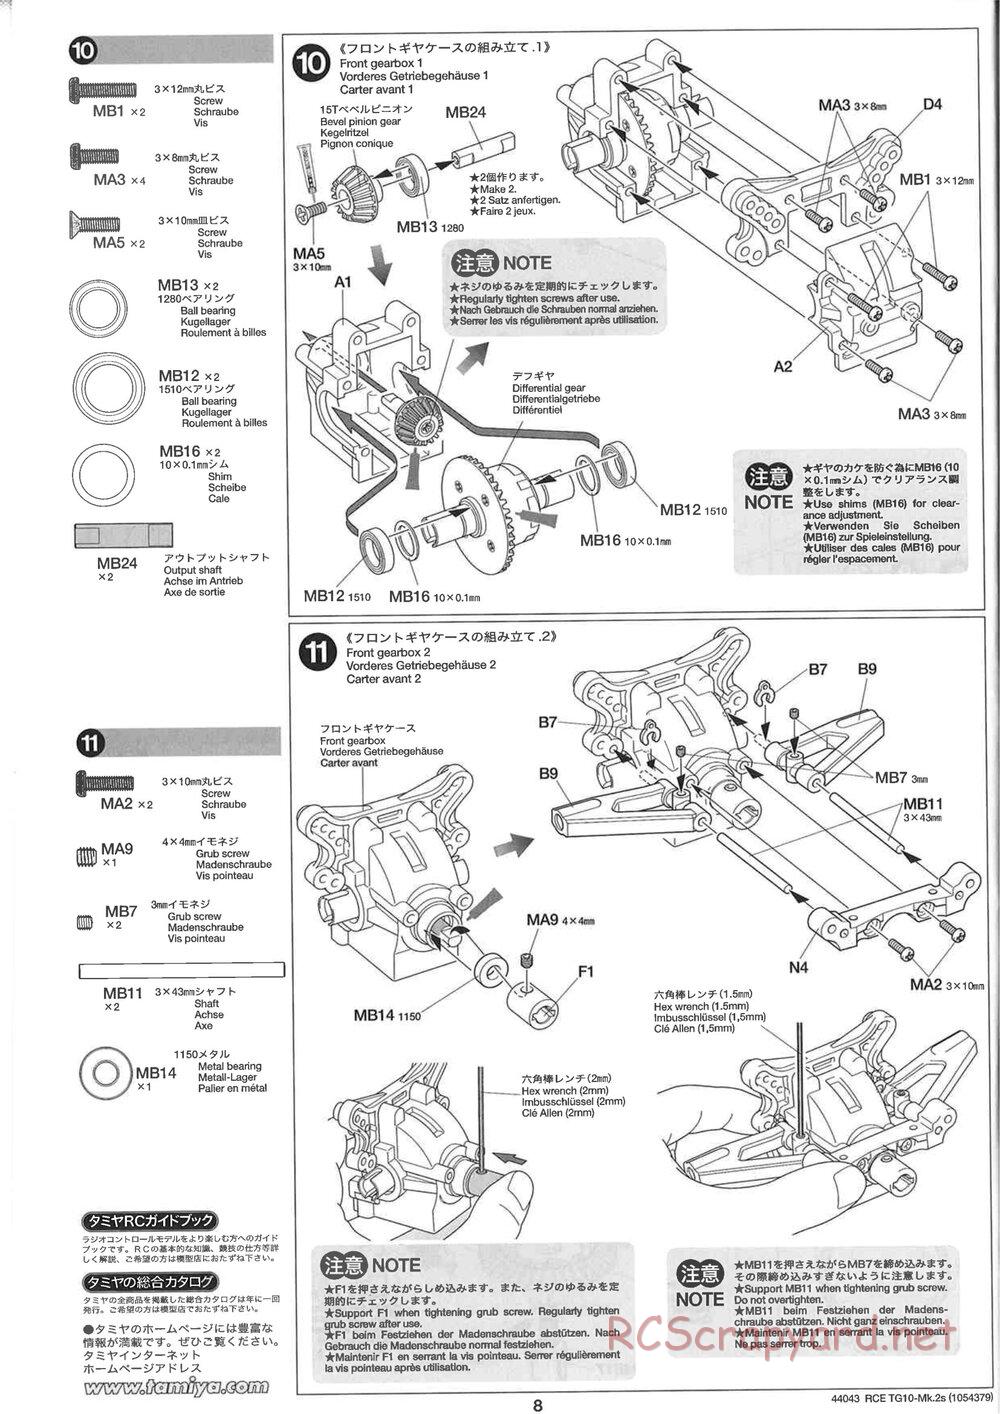 Tamiya - TG10 Mk.2s Chassis - Manual - Page 9